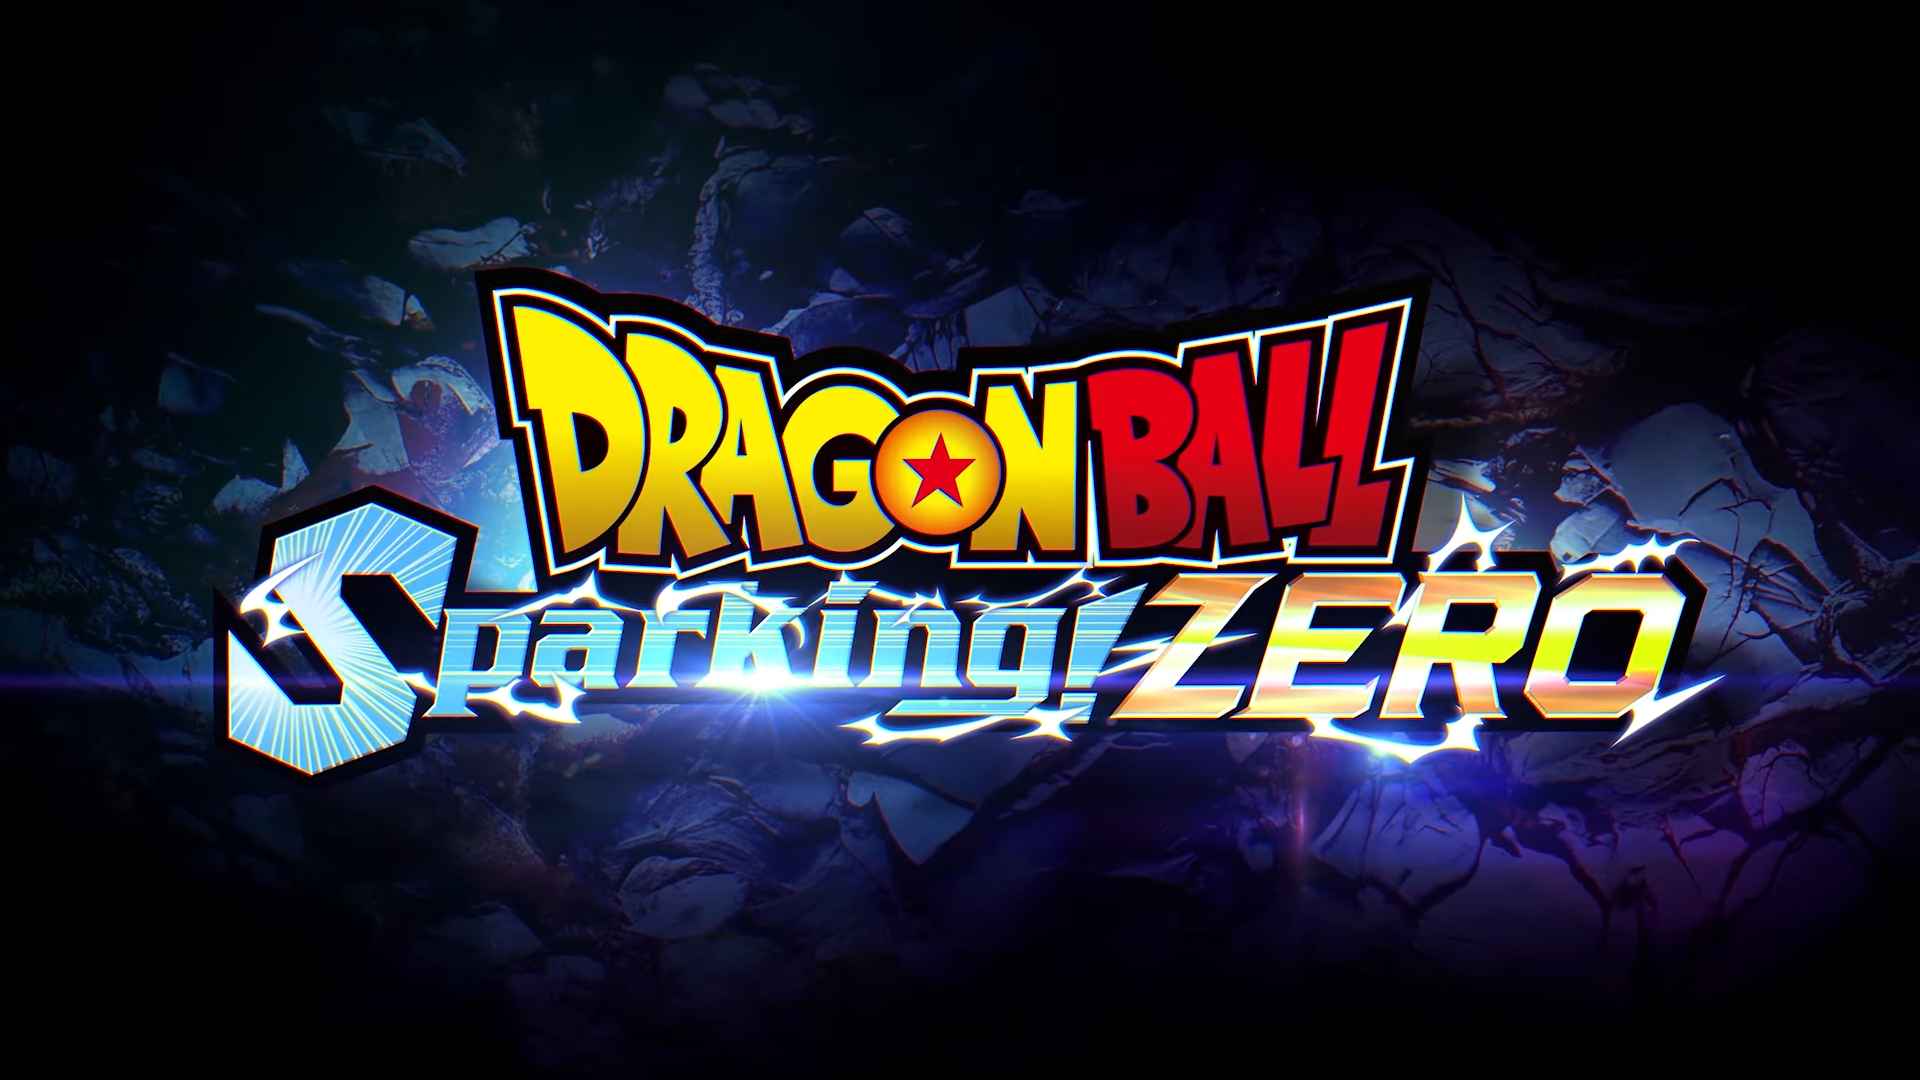 Dragon Ball: Sparking! ZERO Revives the Budokai Tenkaichi Series for a New Generation